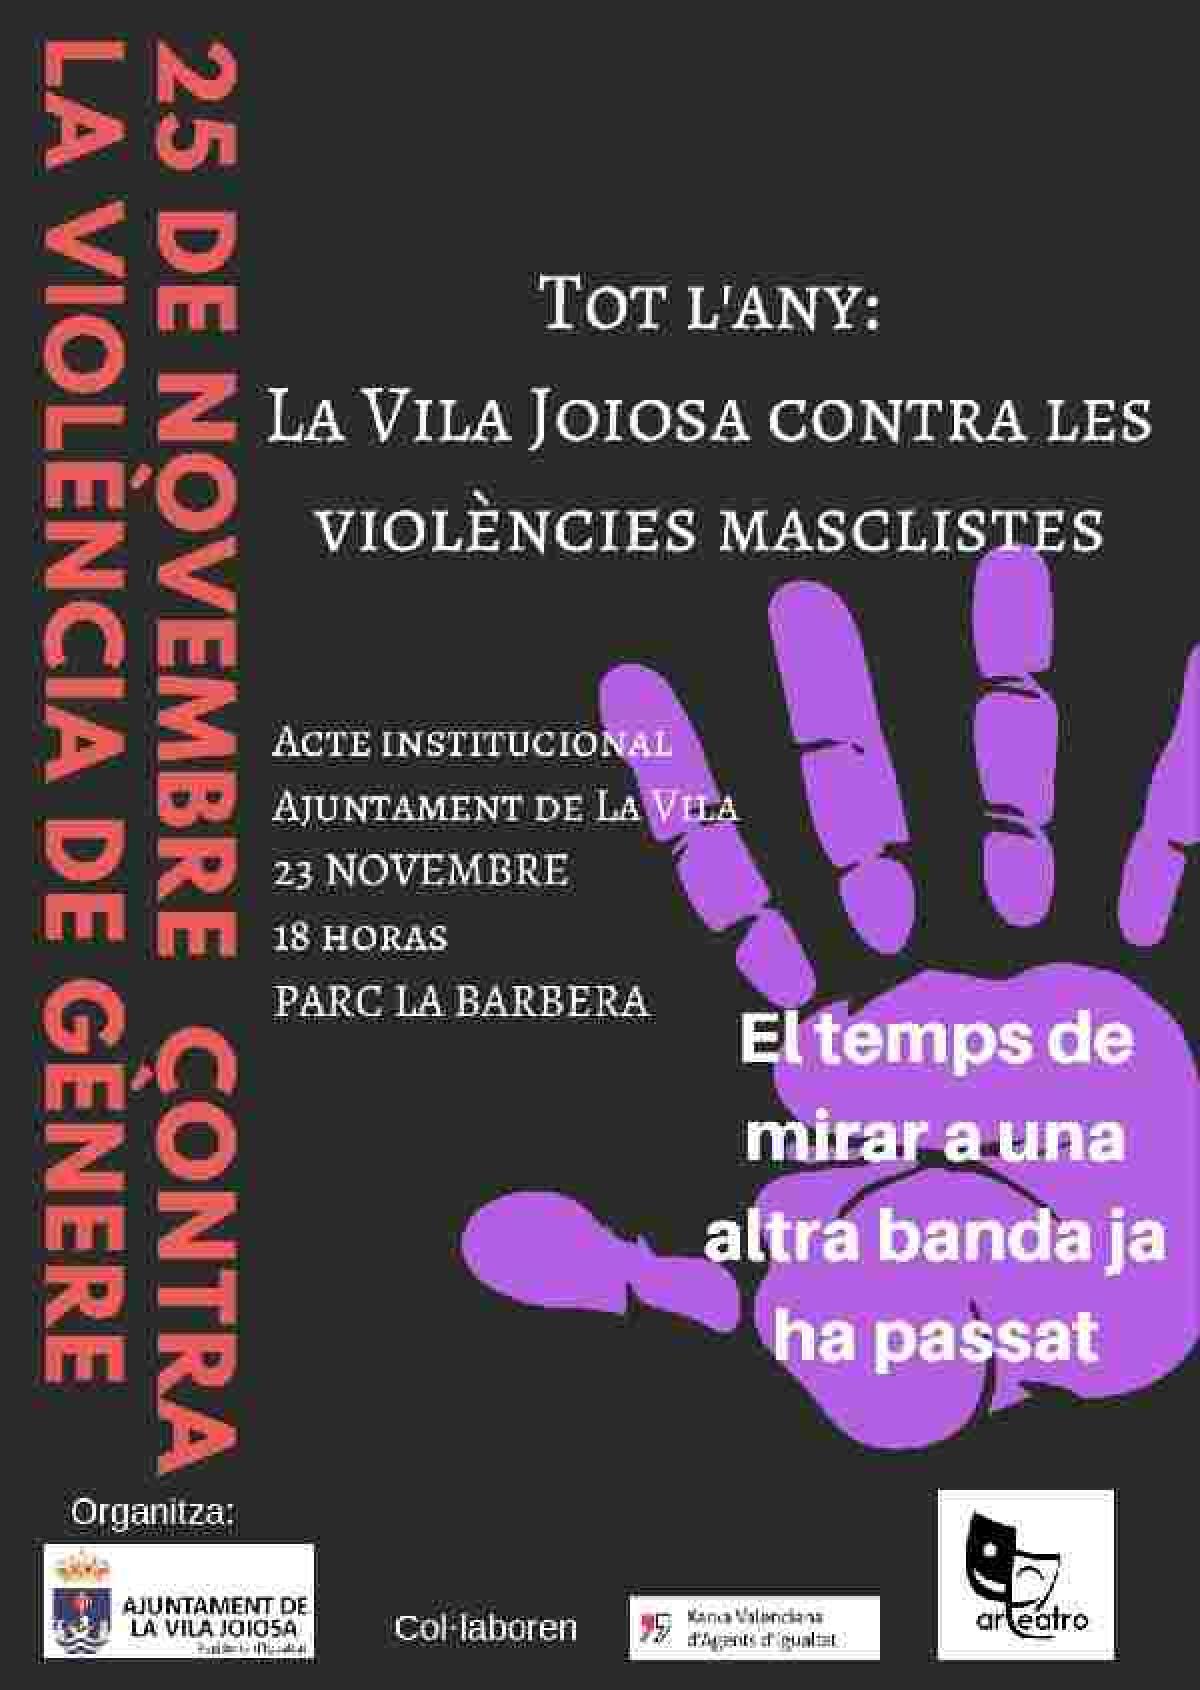 La Concejalía de Igualdad pone en marcha una campaña de sensibilización ciudadana en varios idiomas contra las violencias machistas en torno al 25 de Noviembre 